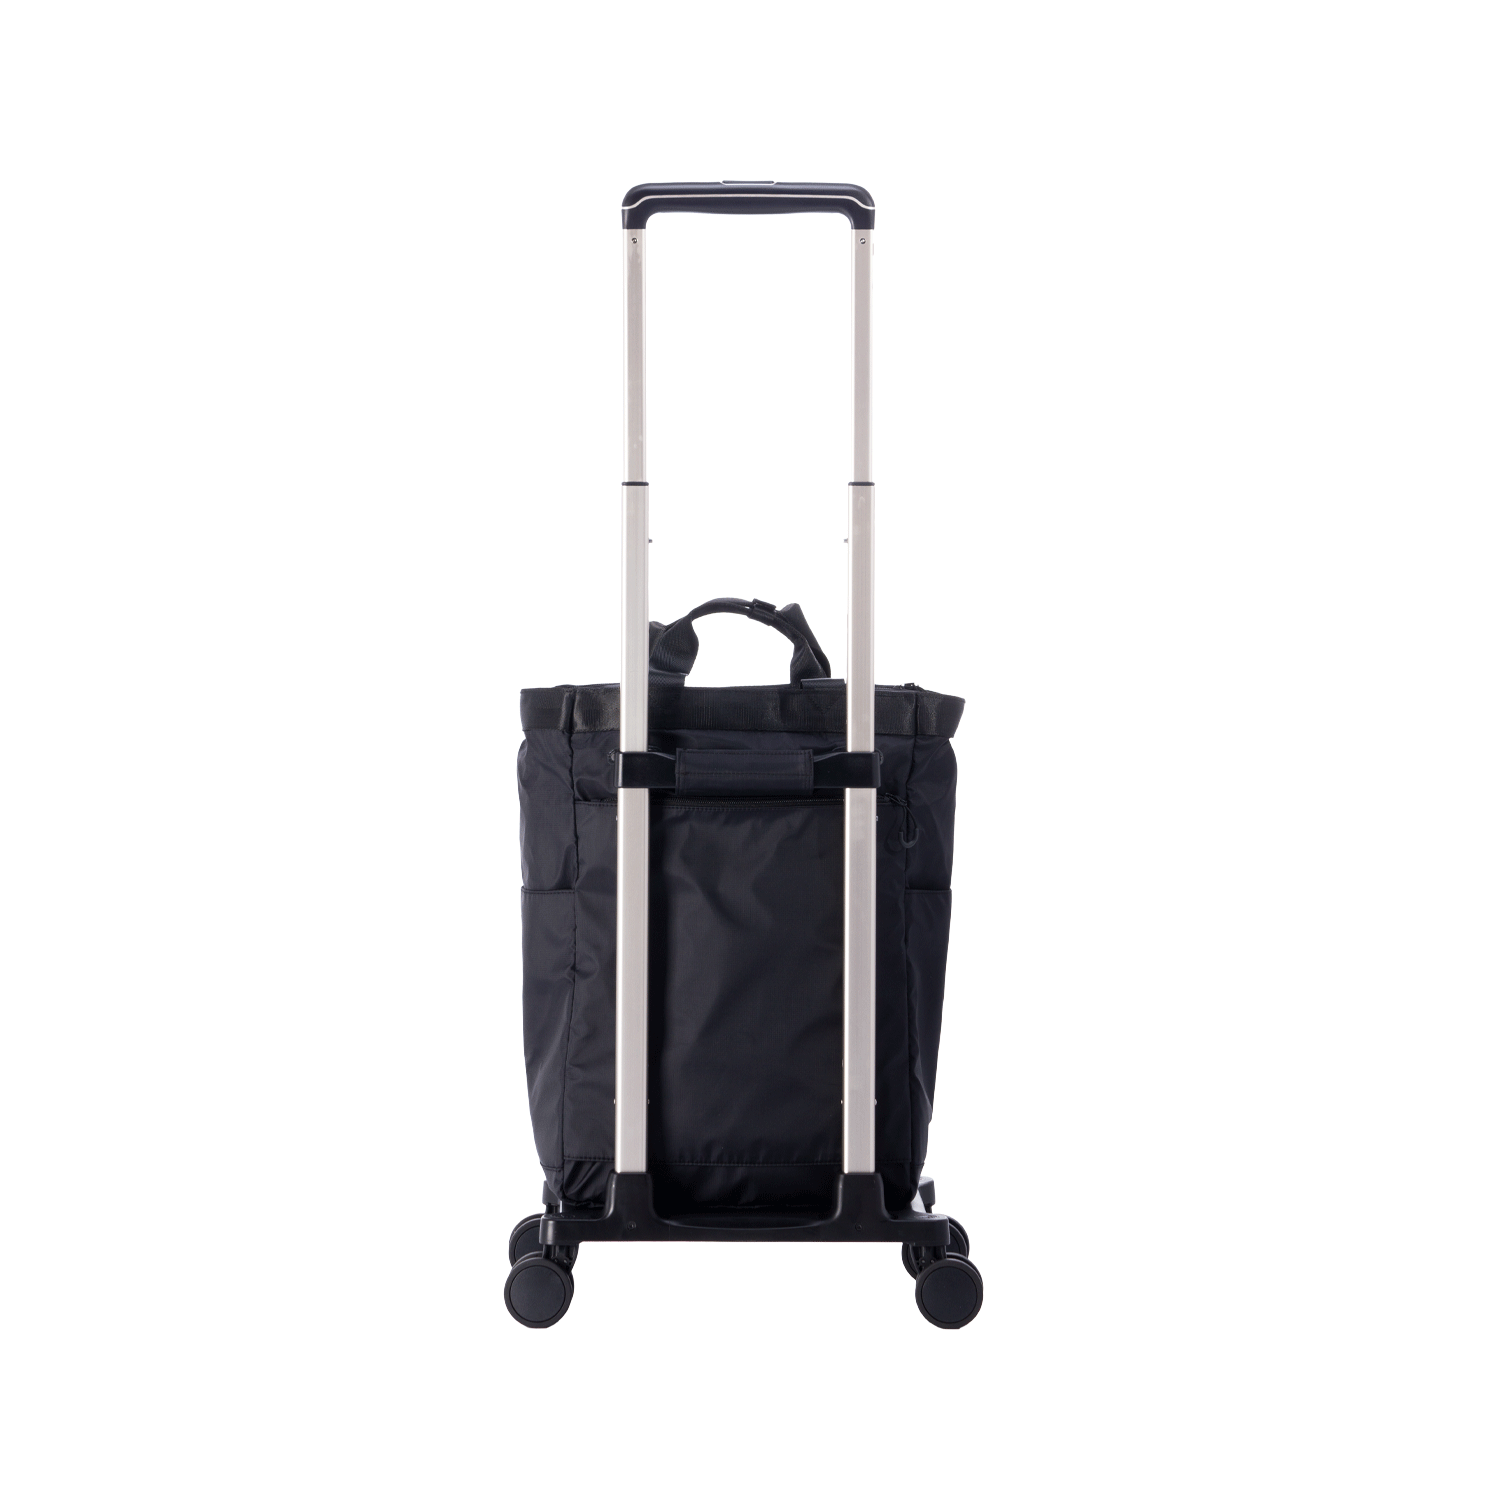 撥水&保冷&安定走行!! スーツケースメーカーが本気で作った、快適に使用できるお買い物キャリー AS-1380